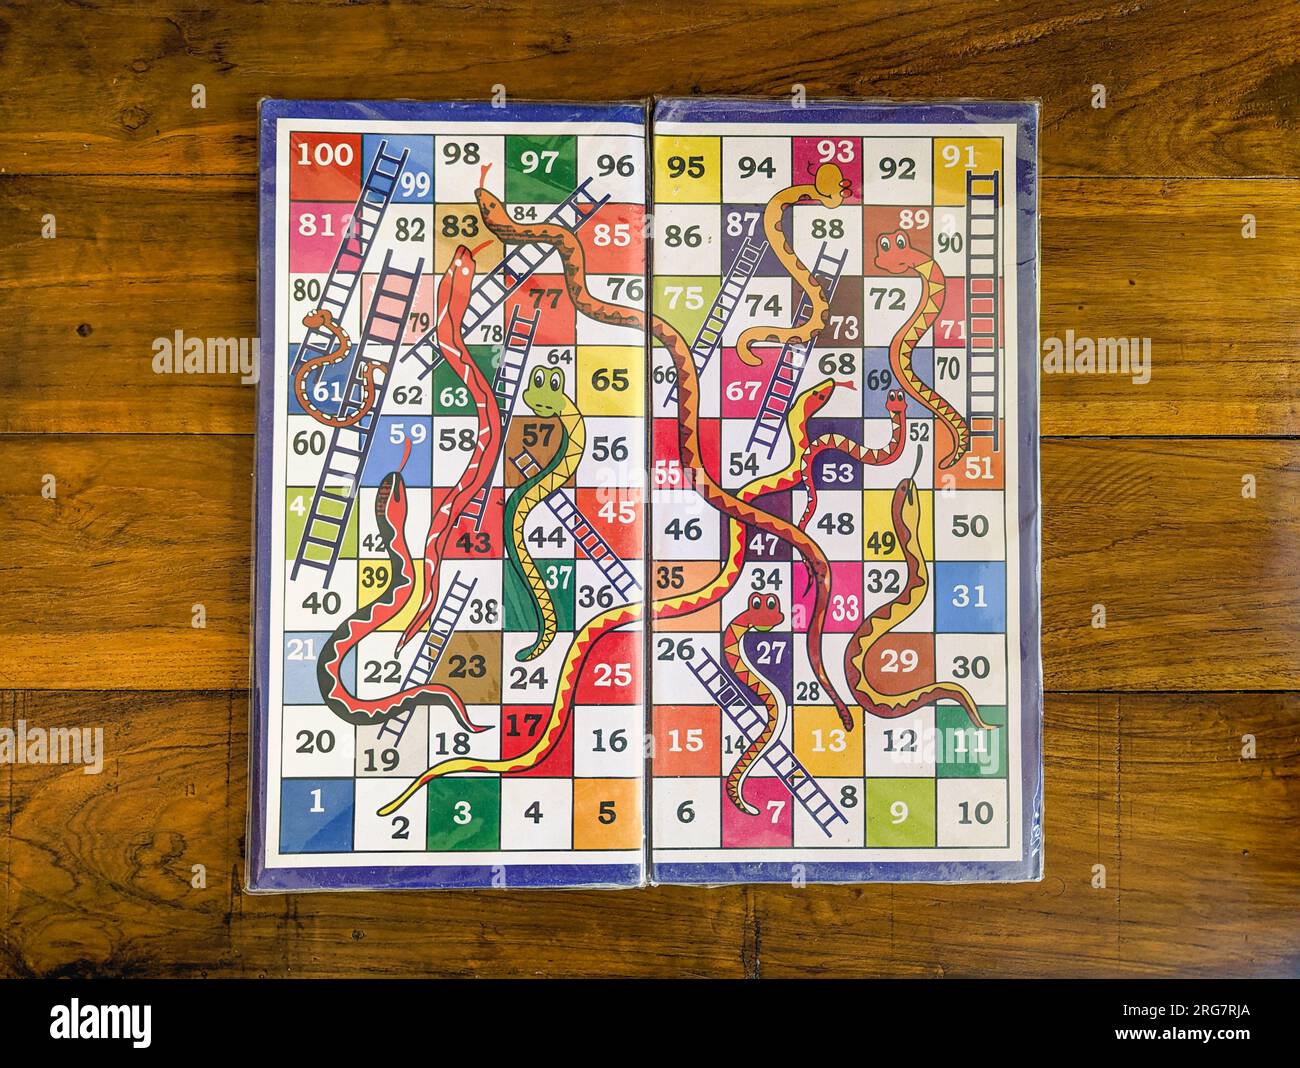 primo piano di una versione colorata di un gioco da tavolo multigiocatore con serpenti e scale su uno sfondo di legno Foto Stock